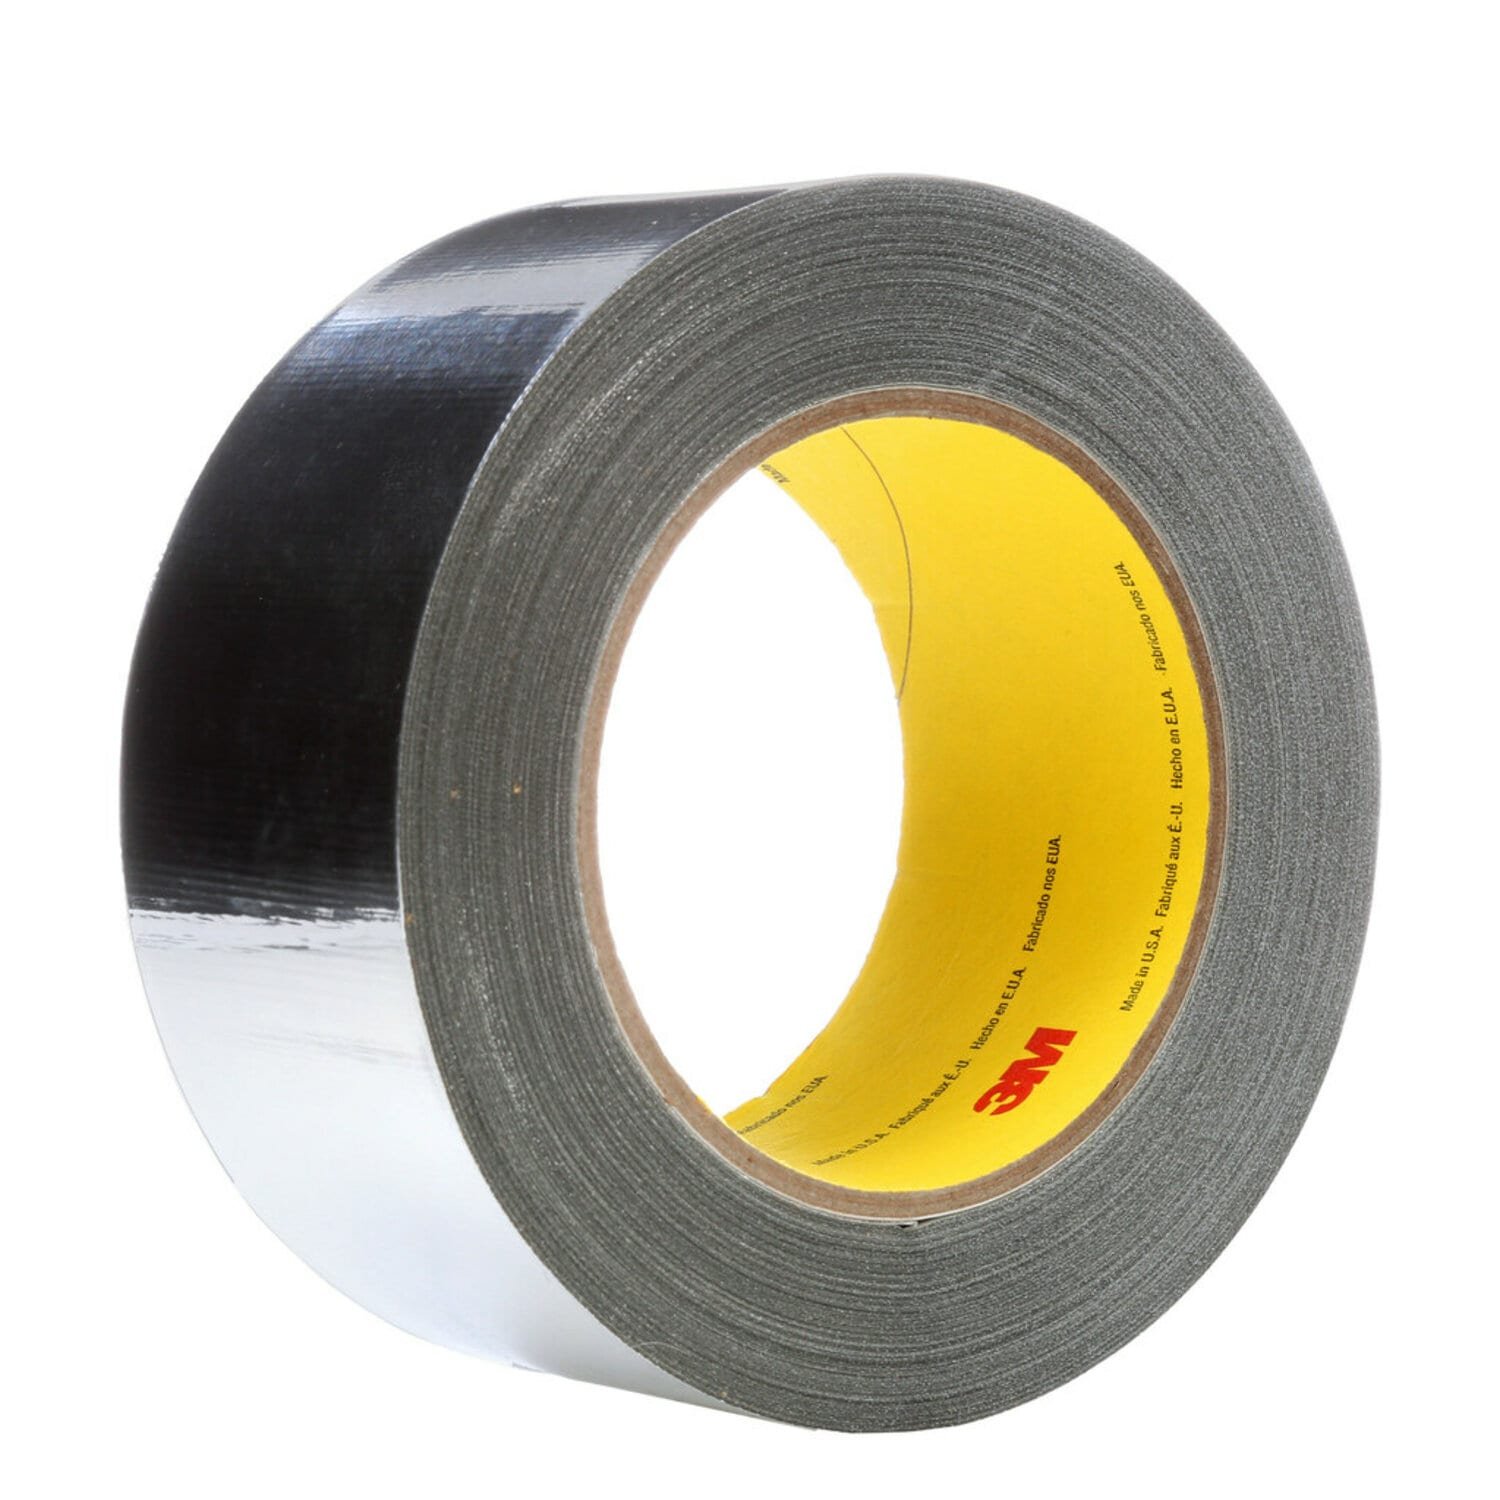 7000028867 - 3M High Temperature Aluminum Foil Glass Cloth Tape 363, Silver, 2 in x
36 yd, 7.3 mil, 24 rolls per case